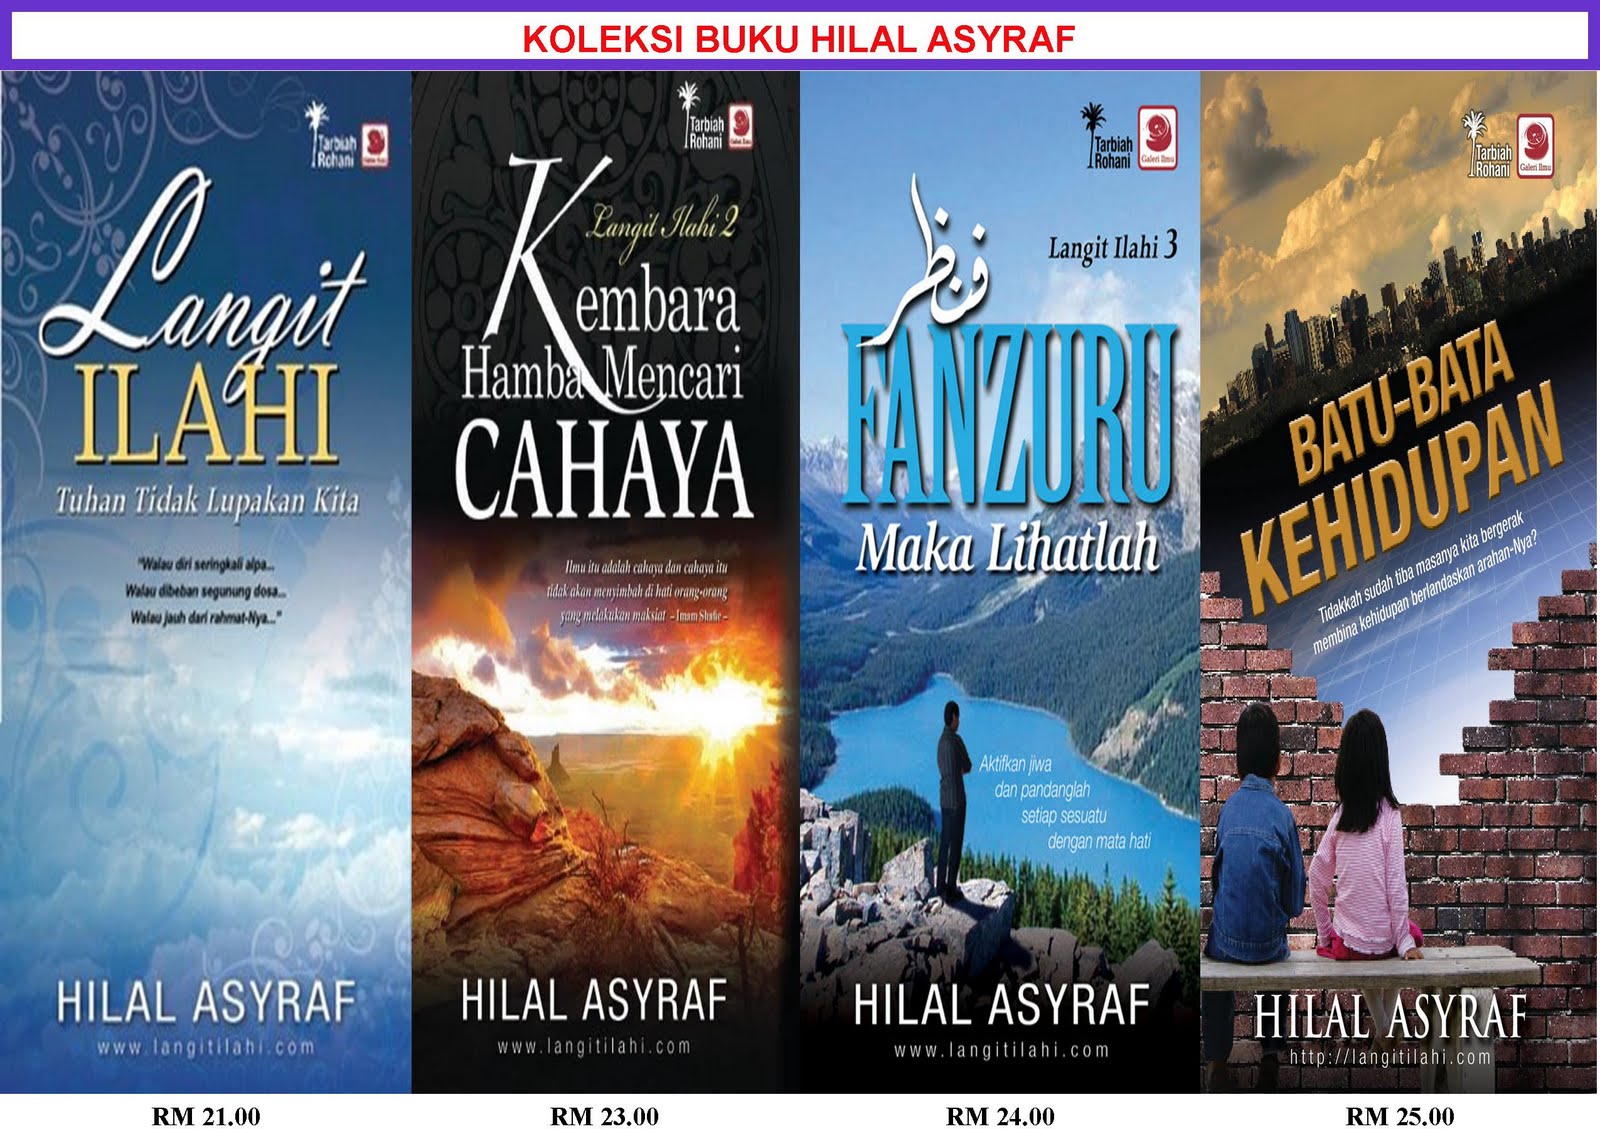 Beli Buku Online: Buku Hilal Asyraf